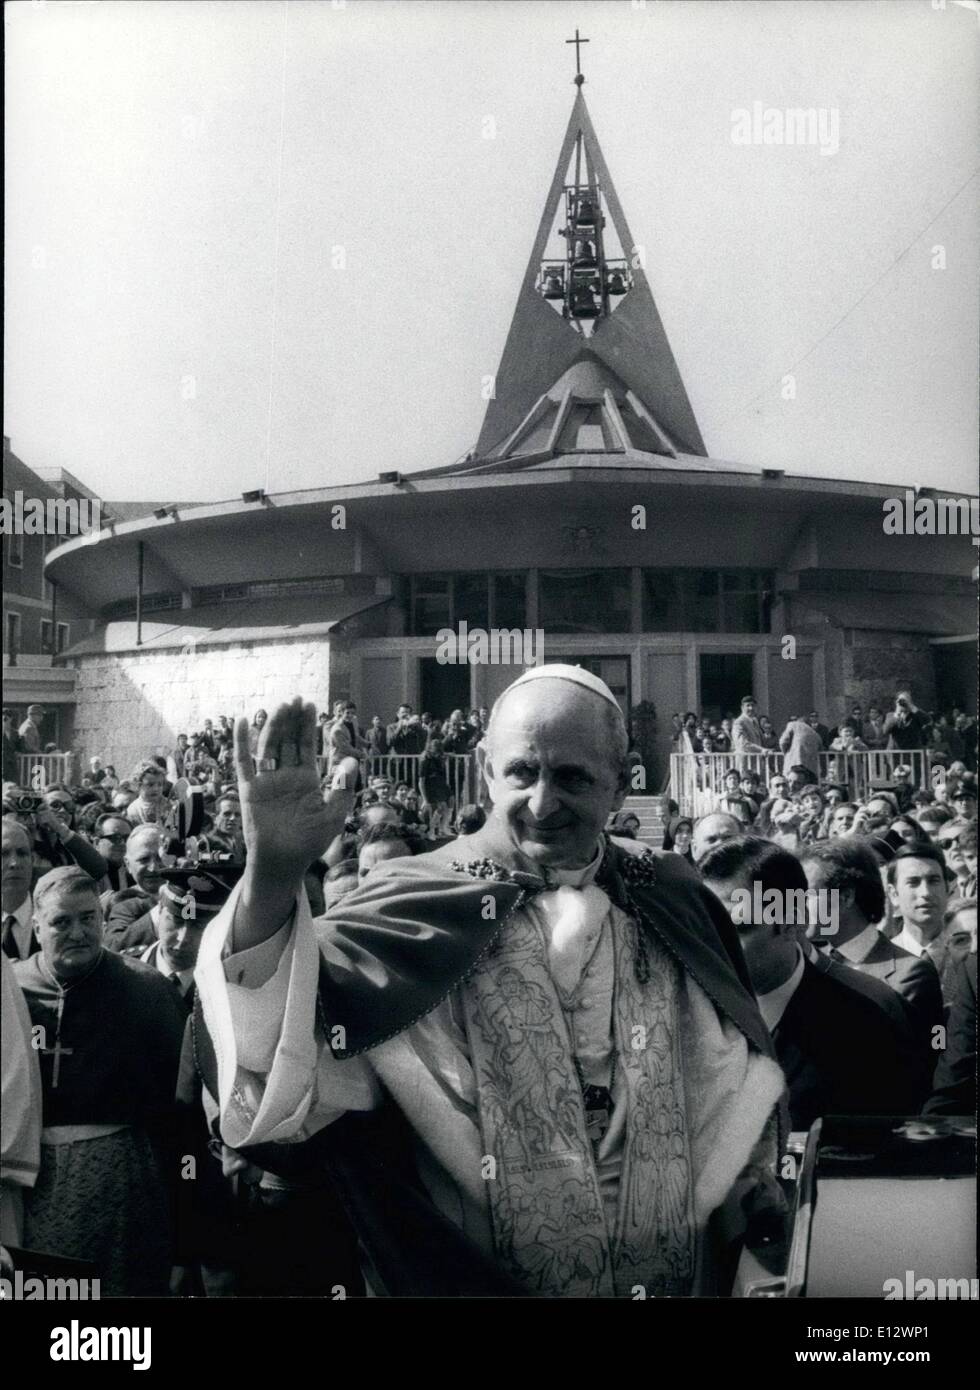 Febbraio 26, 2012 - Papa Paolo VI andò alla piccola chiesa Ã¢â'¬ËoeJesus Maestro divino' per celebrare la sua seconda Messa di Pasqua. Egli è stato accolto da una grande folla e durante la Messa ha ricevuto un po' di agnello, come vuole la tradizione. Foto Stock